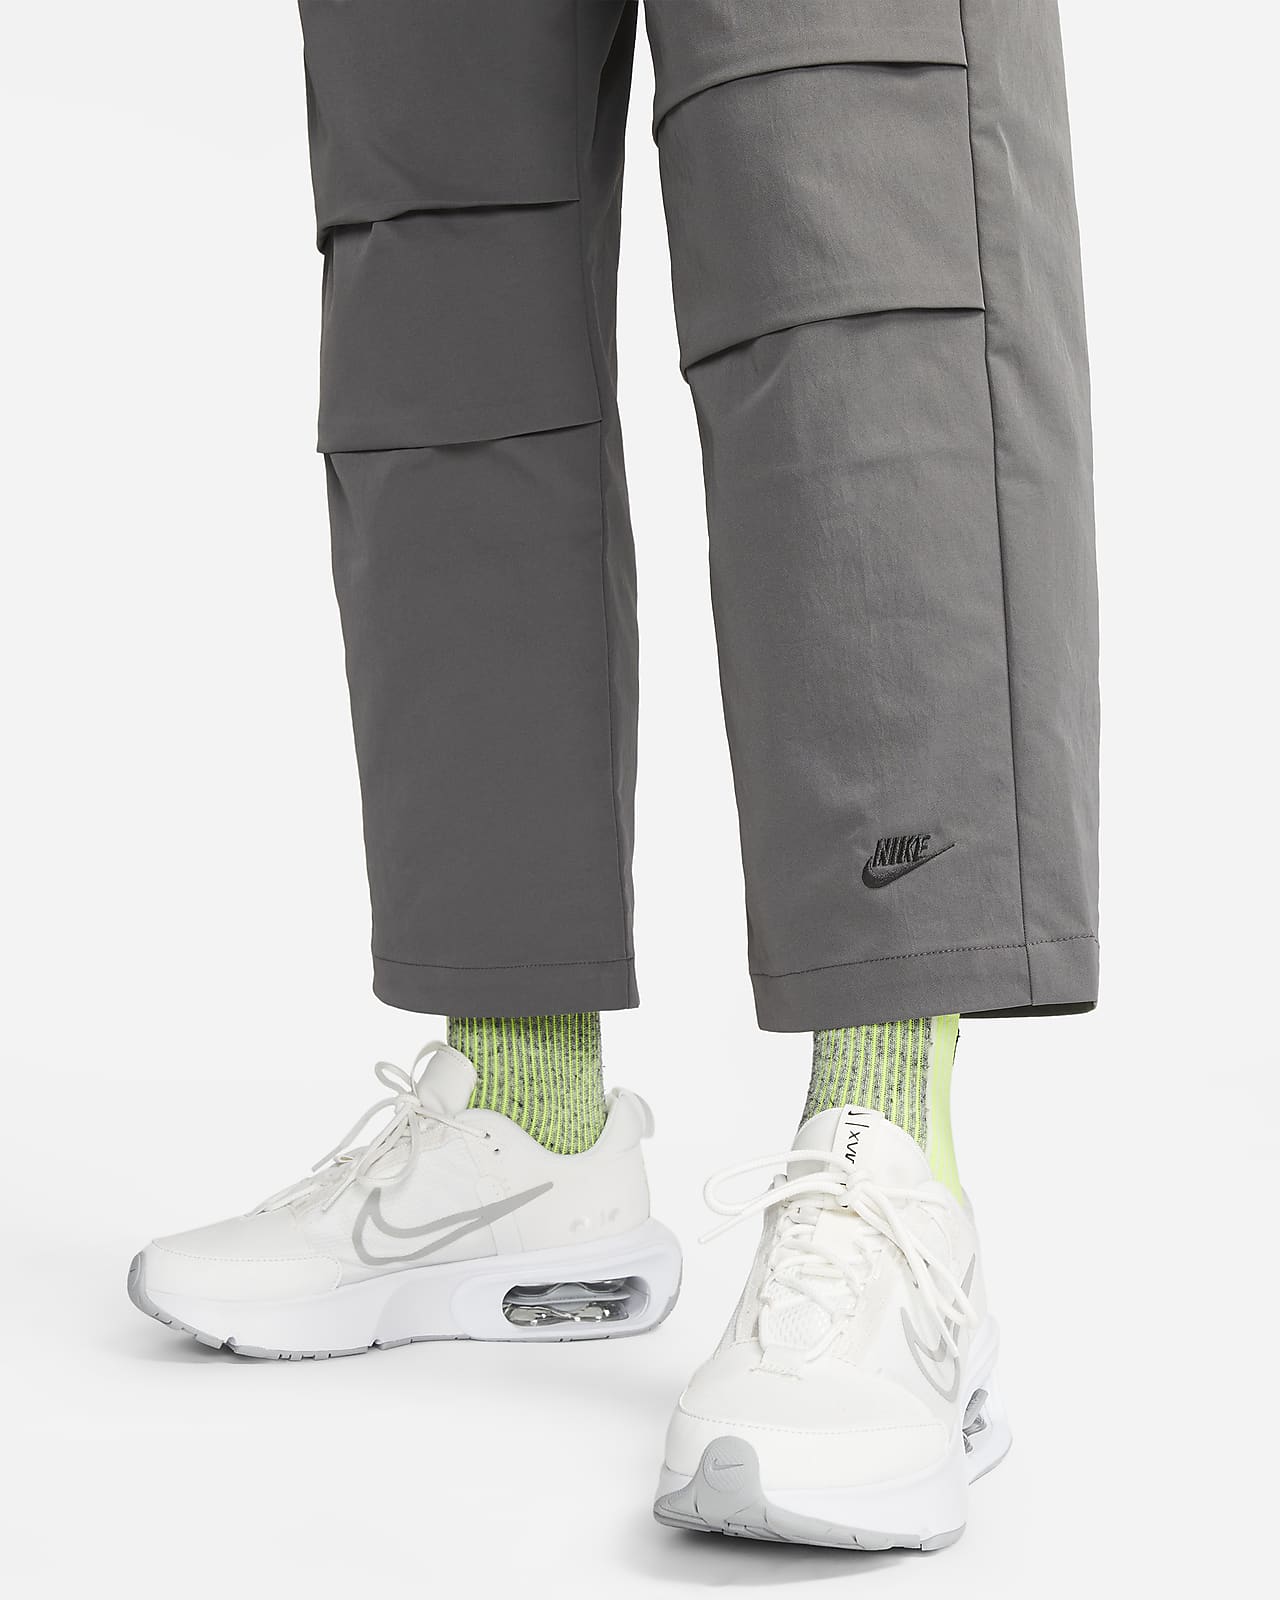  Nike Sportswear Women's Tech Pack Woven Pants (Medium